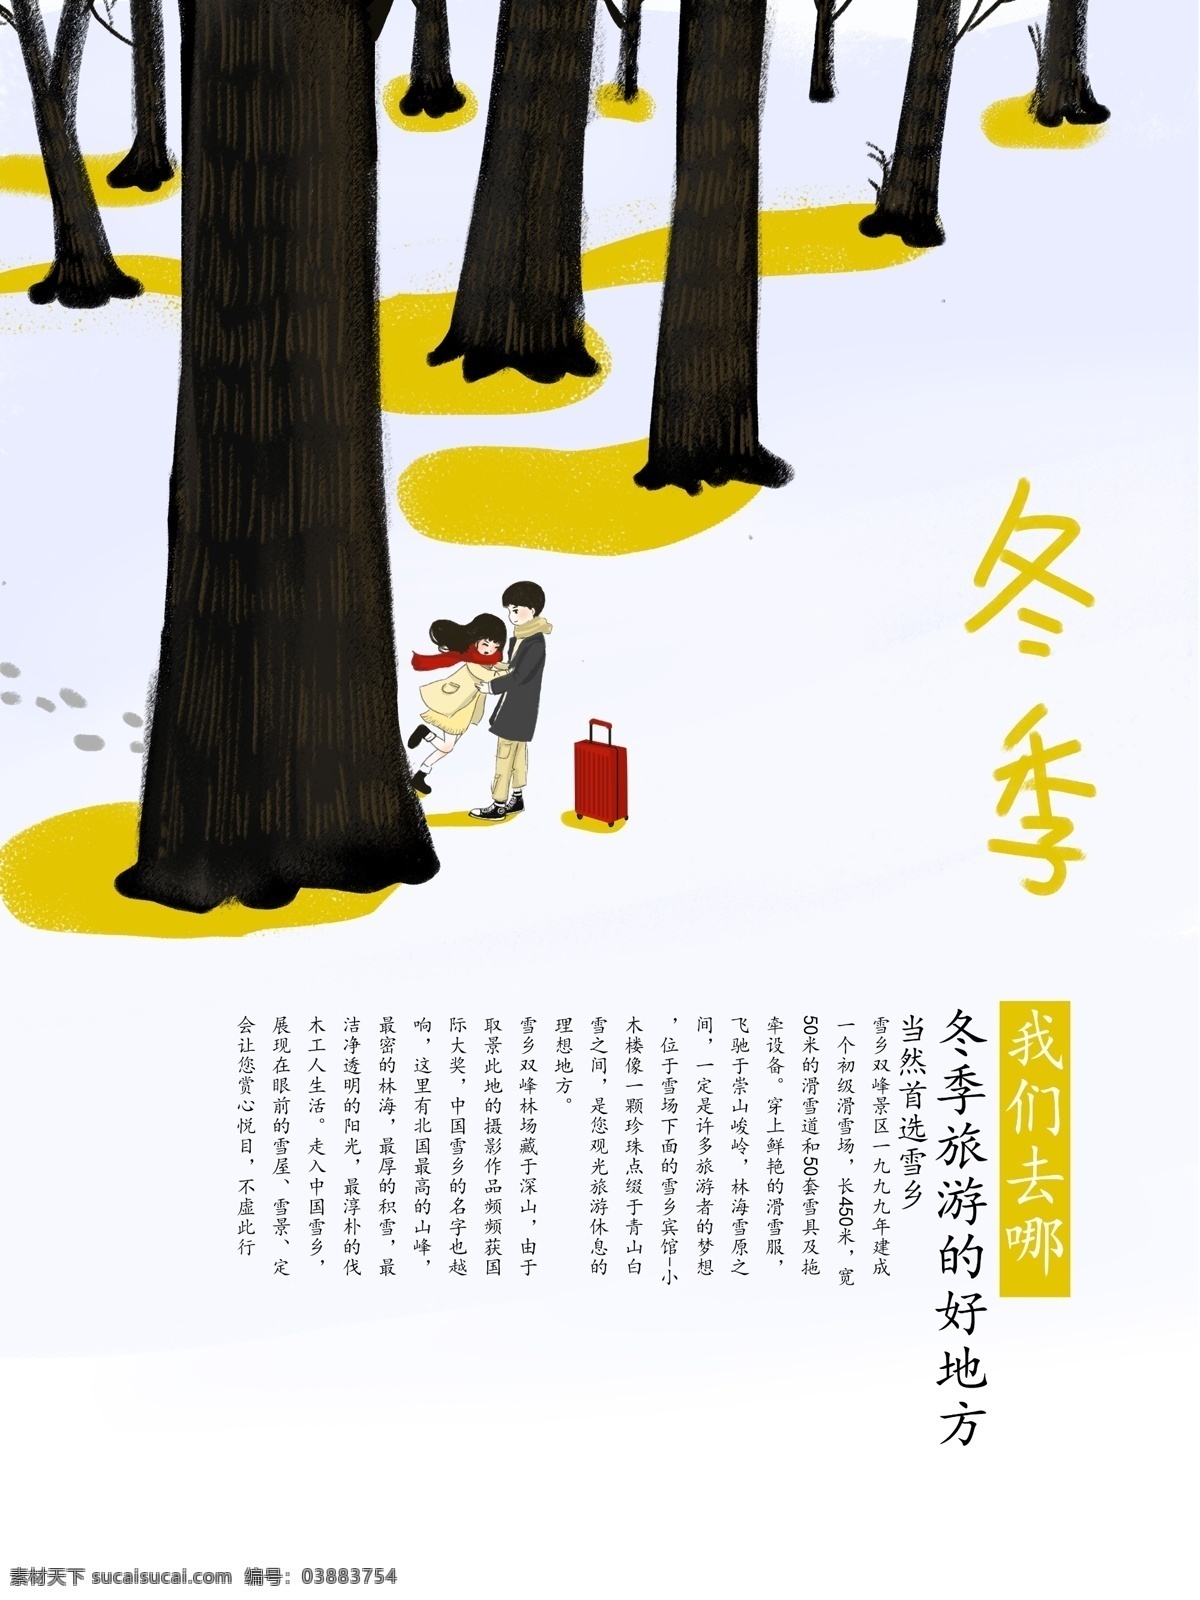 原创 插画 手绘 小清 新日 系 冬季 旅行 小清新 情侣 旅行海报 日系 雪